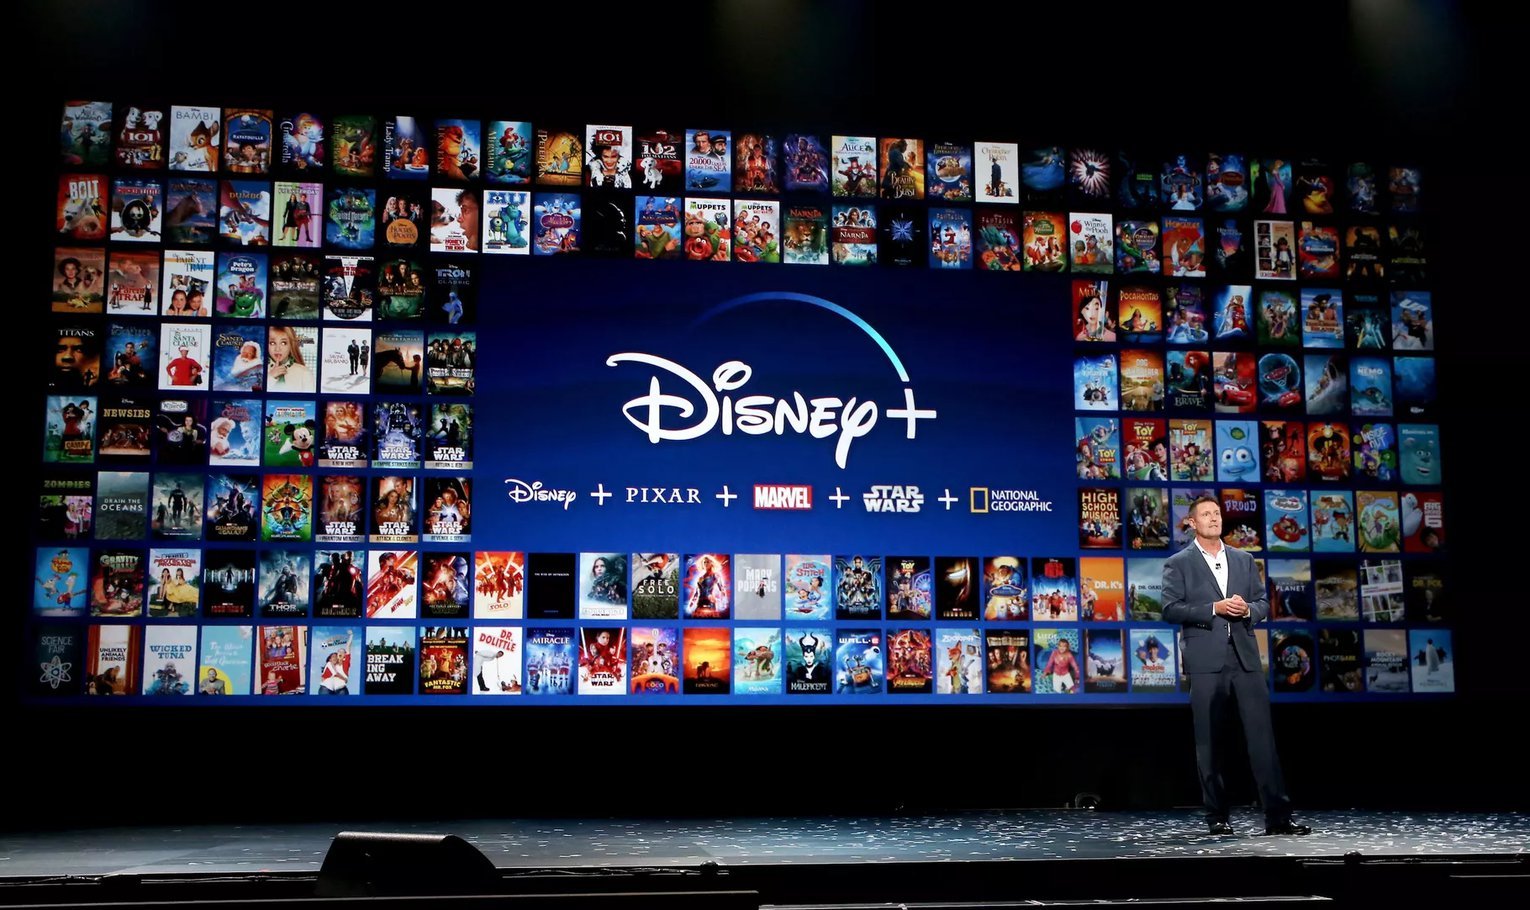 Star Wars, Marvel, Disney : les séries à venir sur Disney+